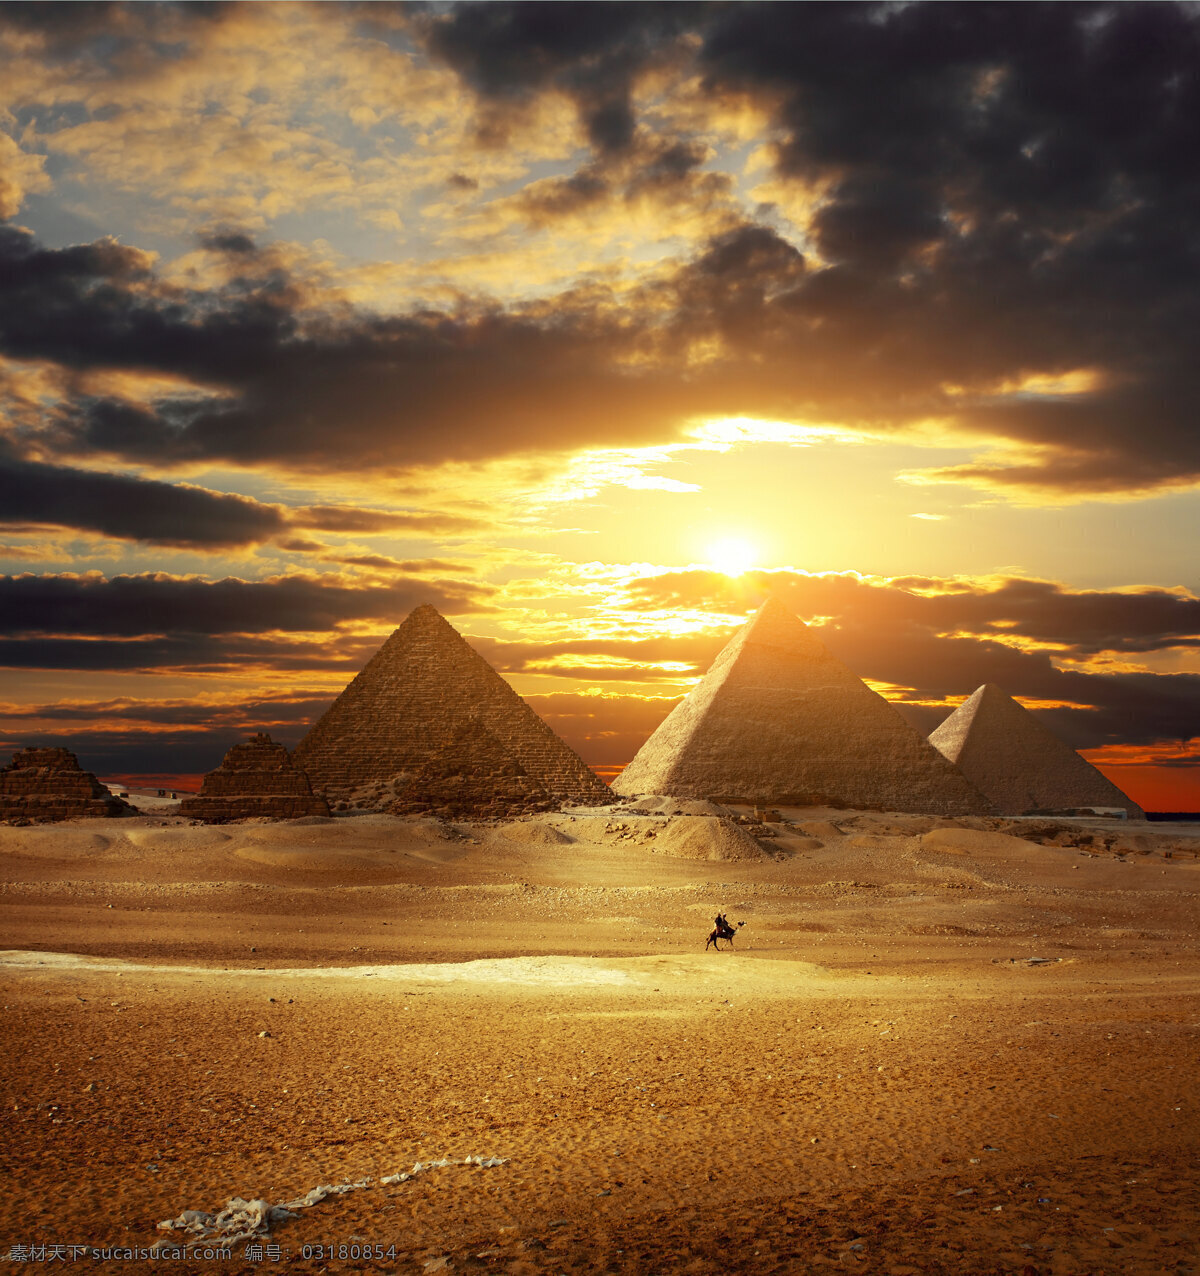 壮丽 金字塔 远景 旅游 埃及 沙漠 天空 阳光 傍晚 金黄 自然 风景 旅游摄影 国外旅游